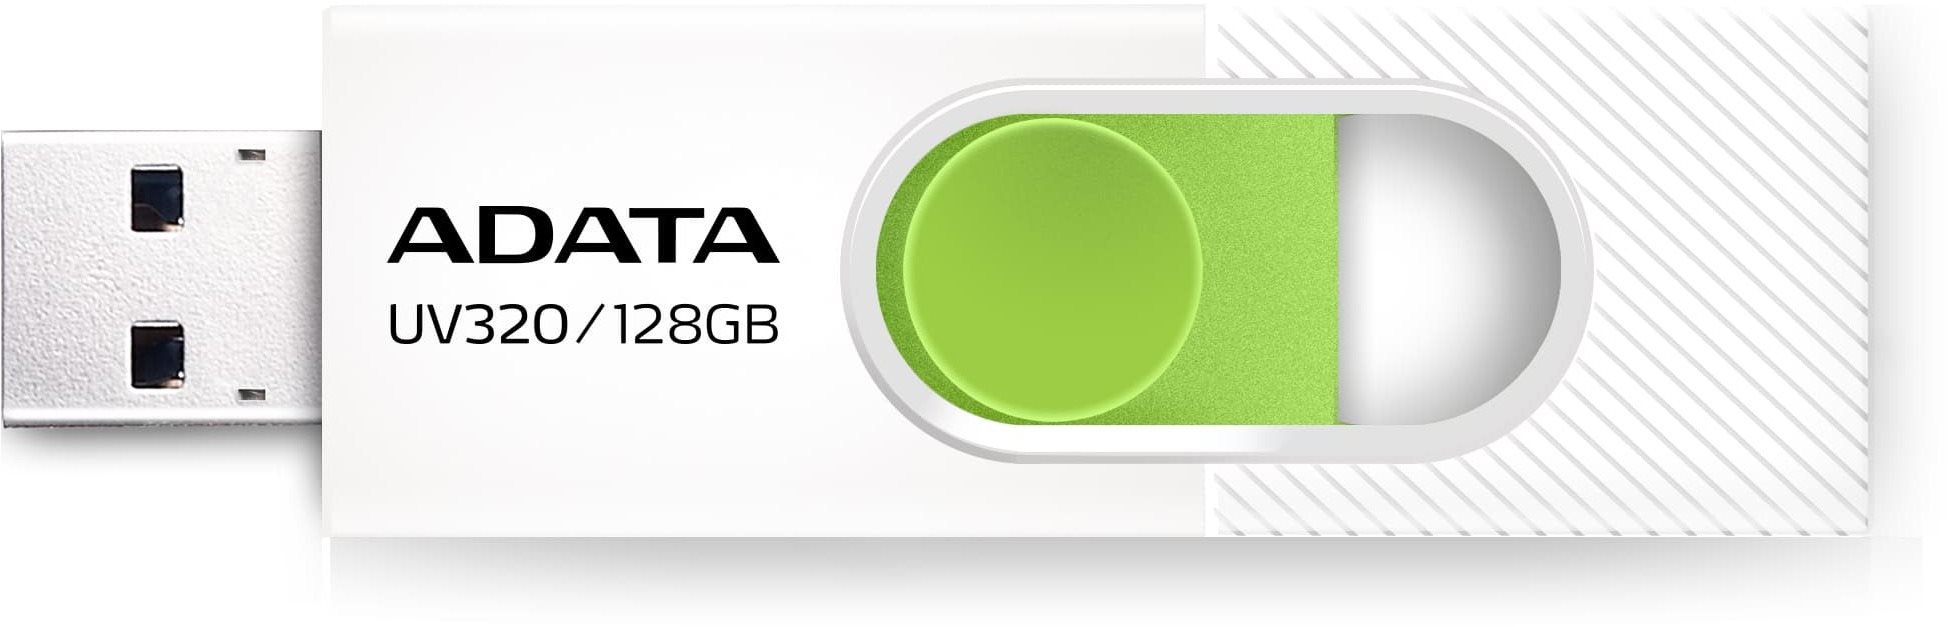 ADATA UV320 128GB, fehér-zöld